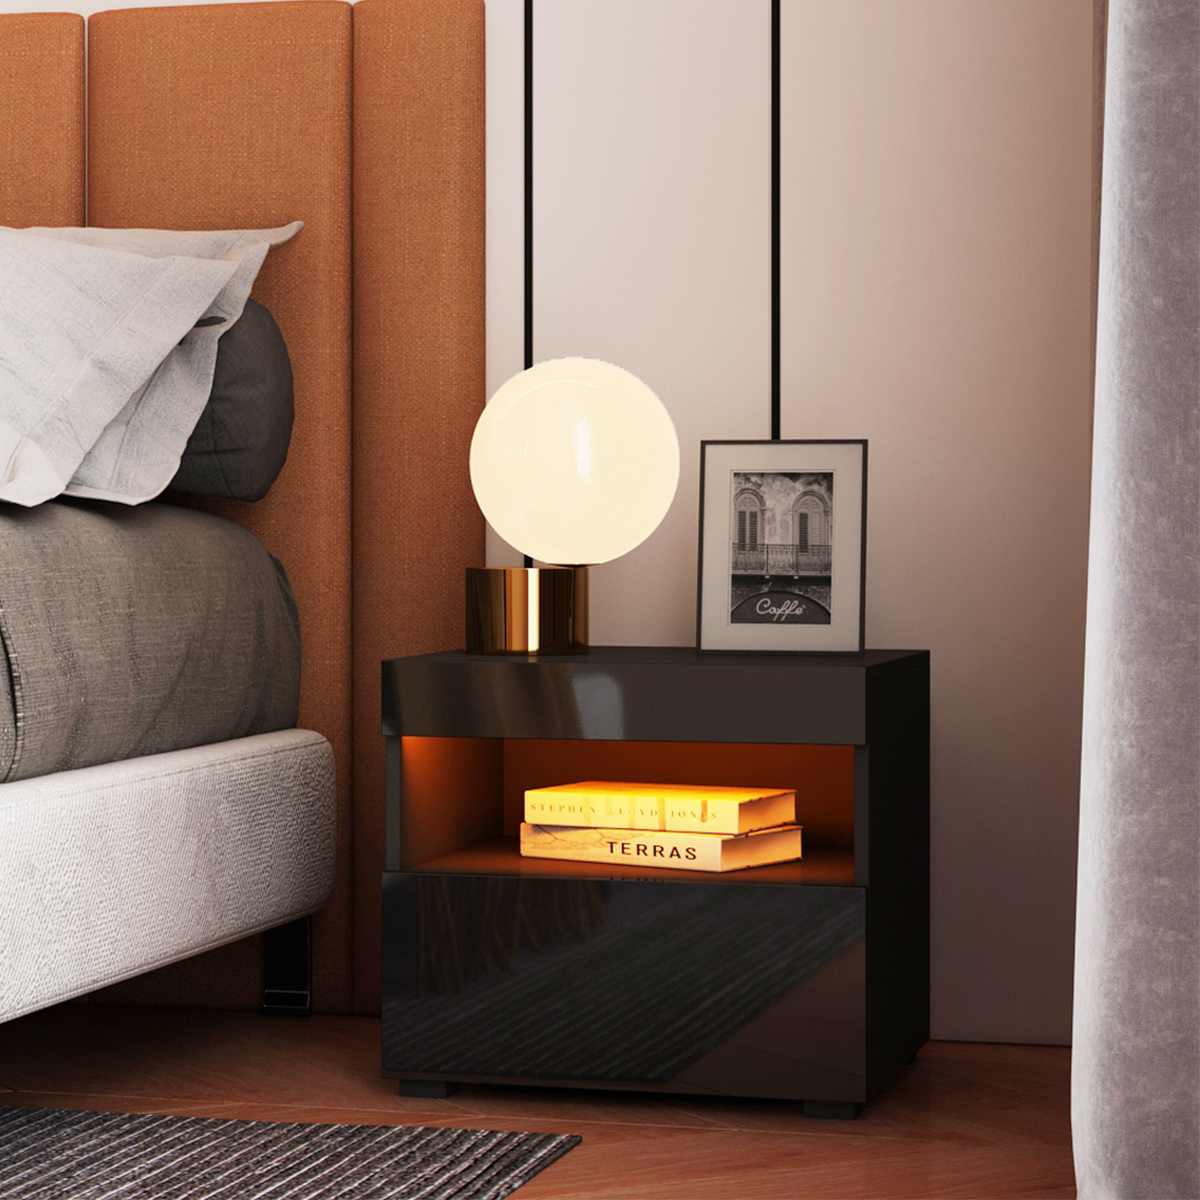 Bedside Cabinet Modern Bedroom Furniture RGB LED Nightstands